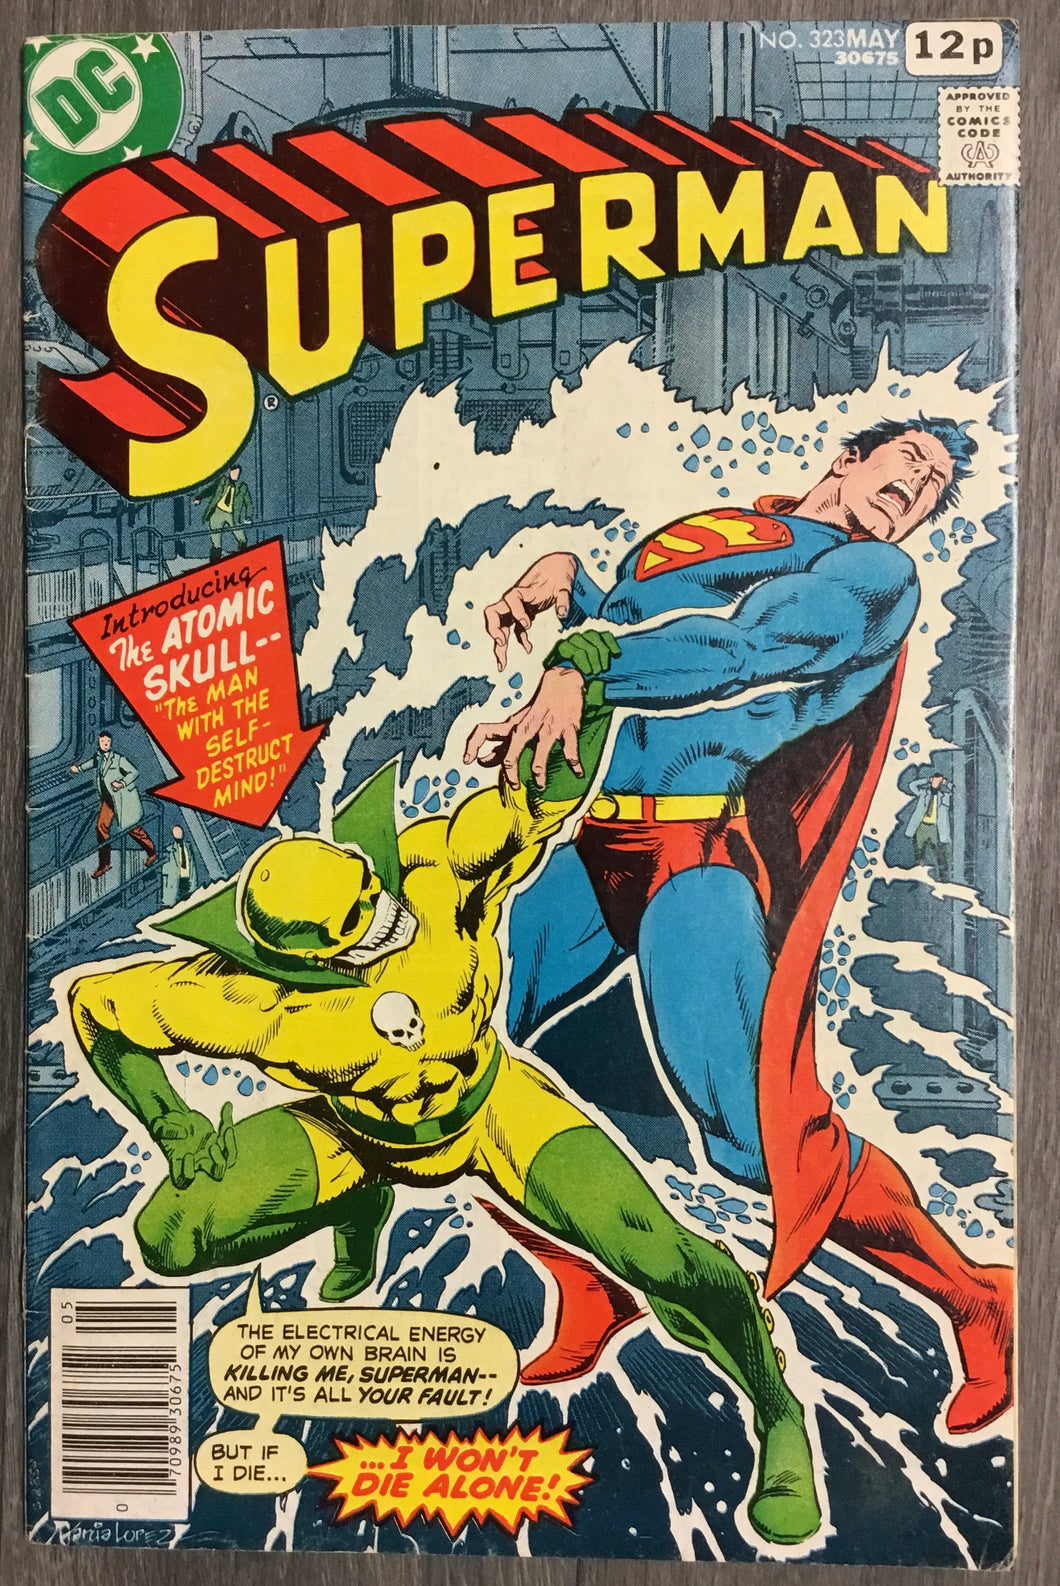 Superman No. #323 1978 DC Comics